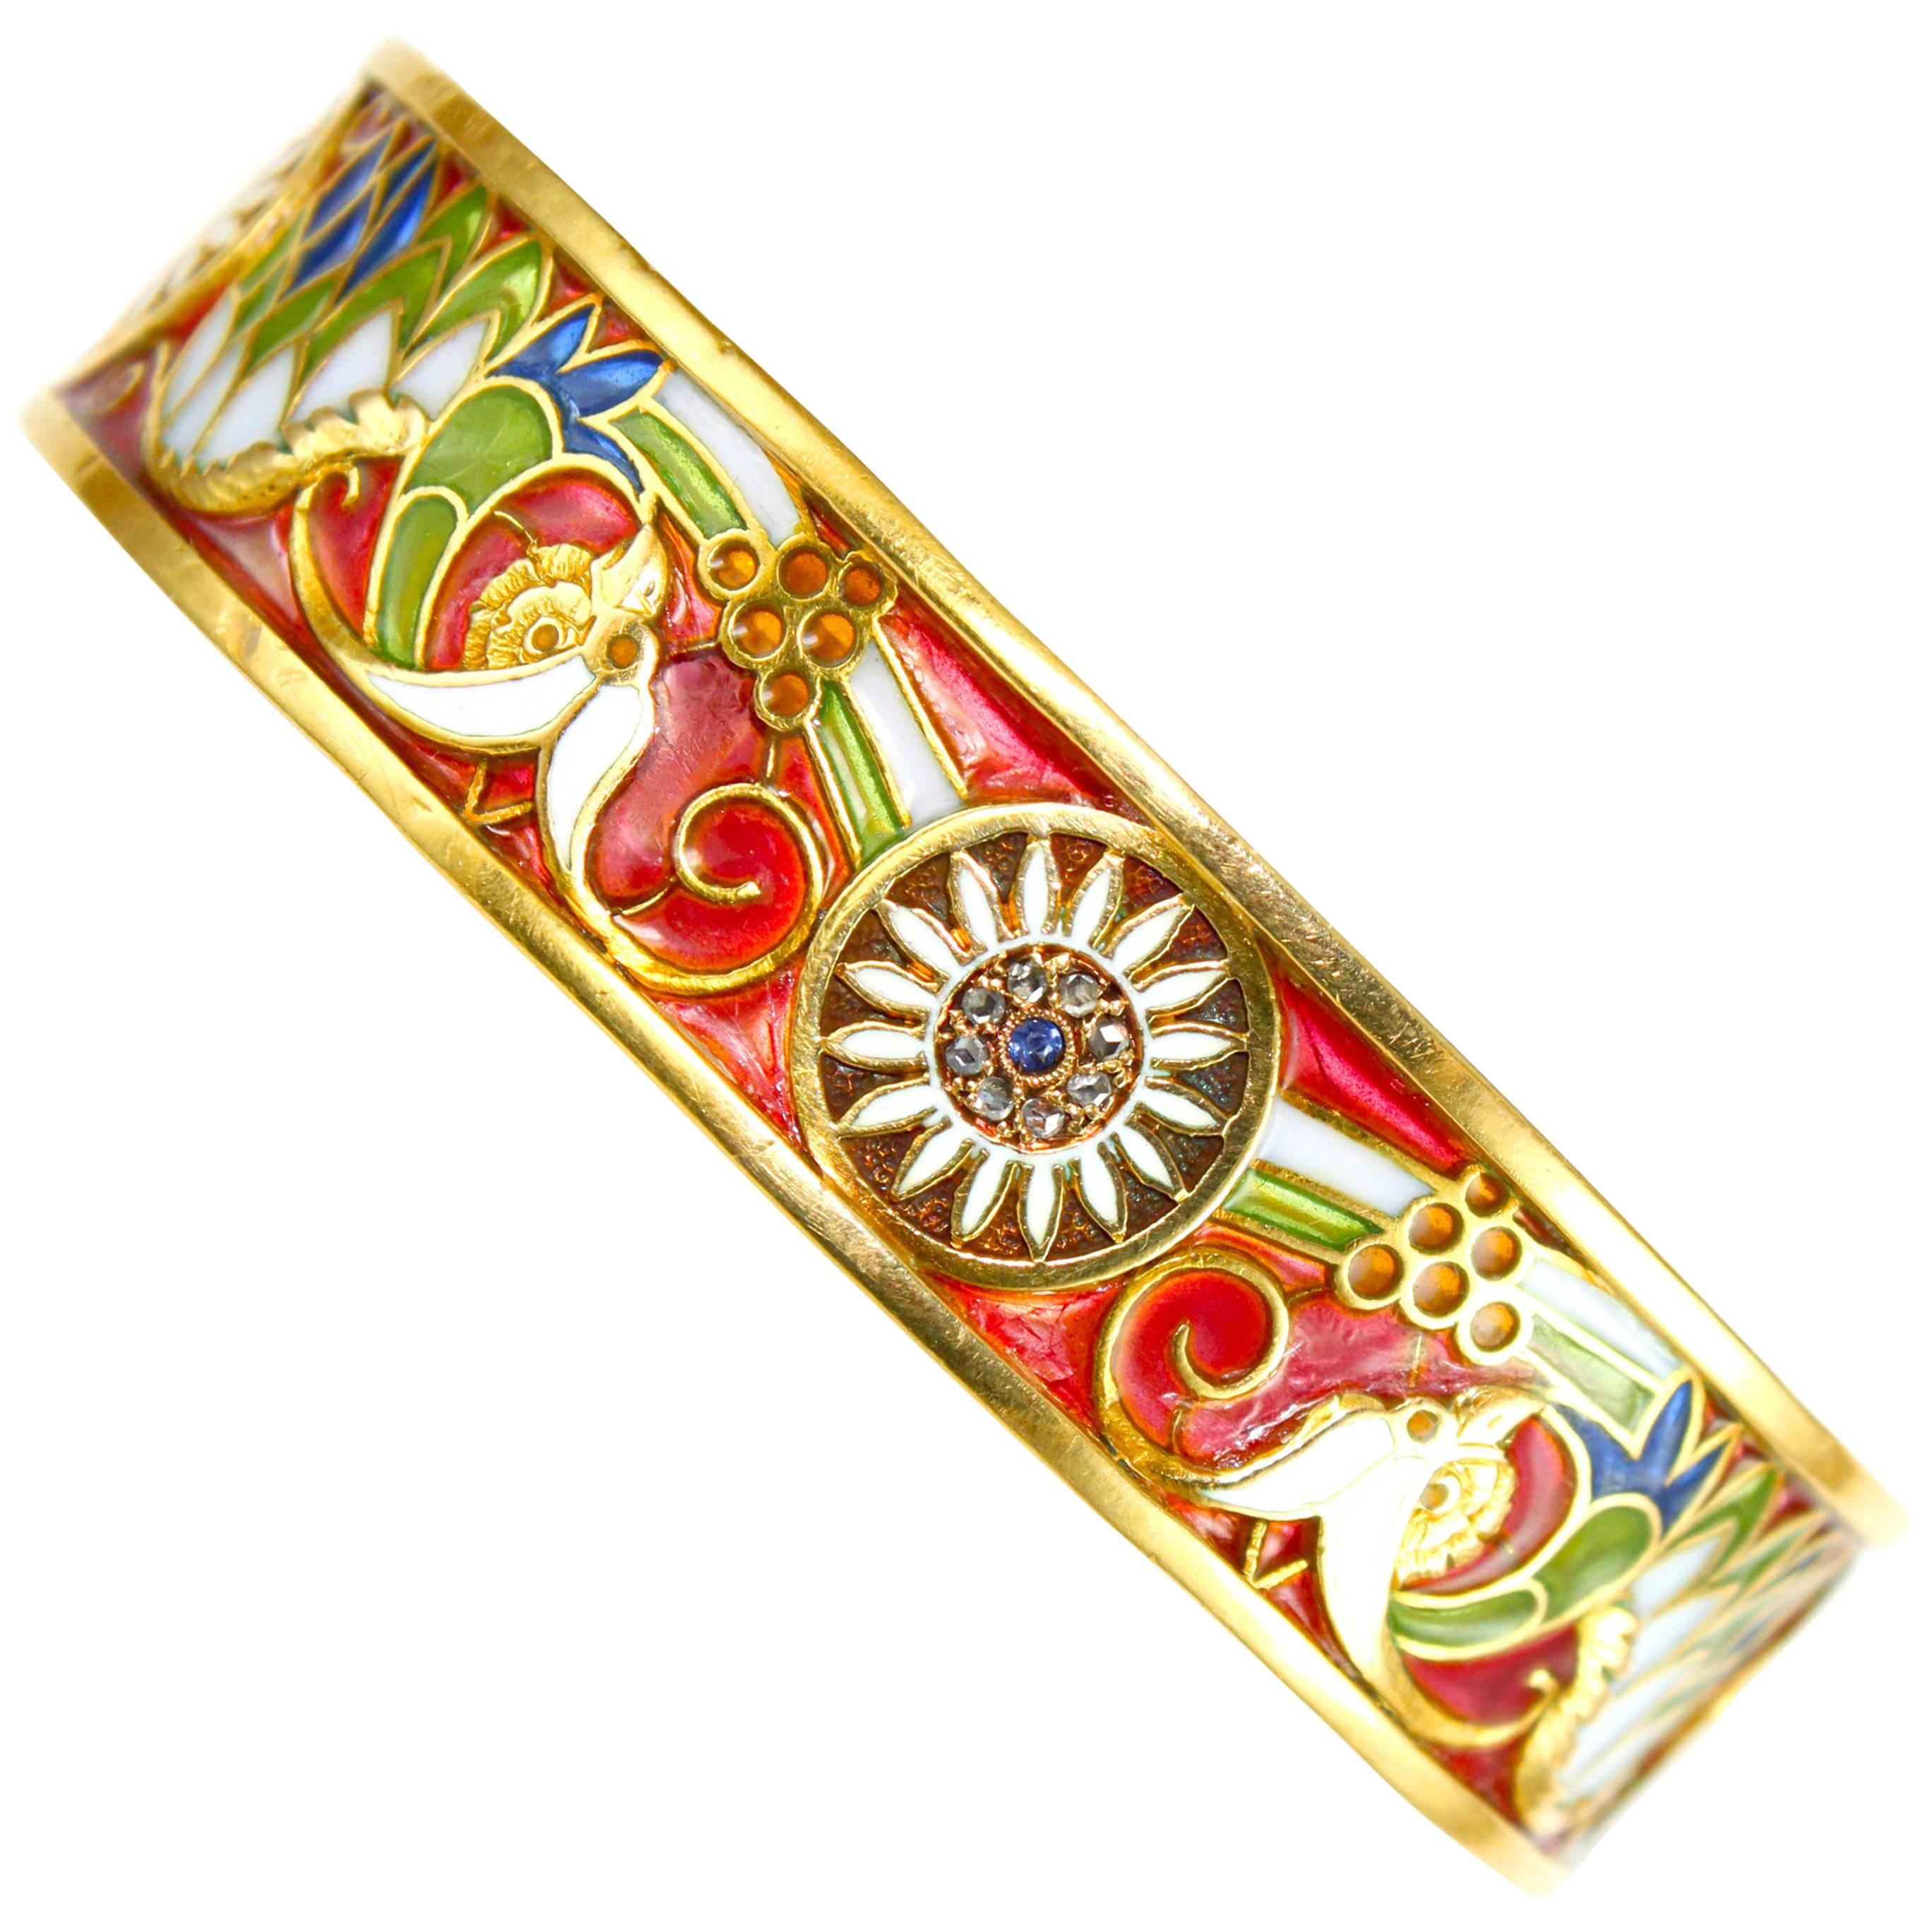 Masriera y Carreras Art Nouveau Plique a Jour Enamel 18K Gold Bangle Bracelet